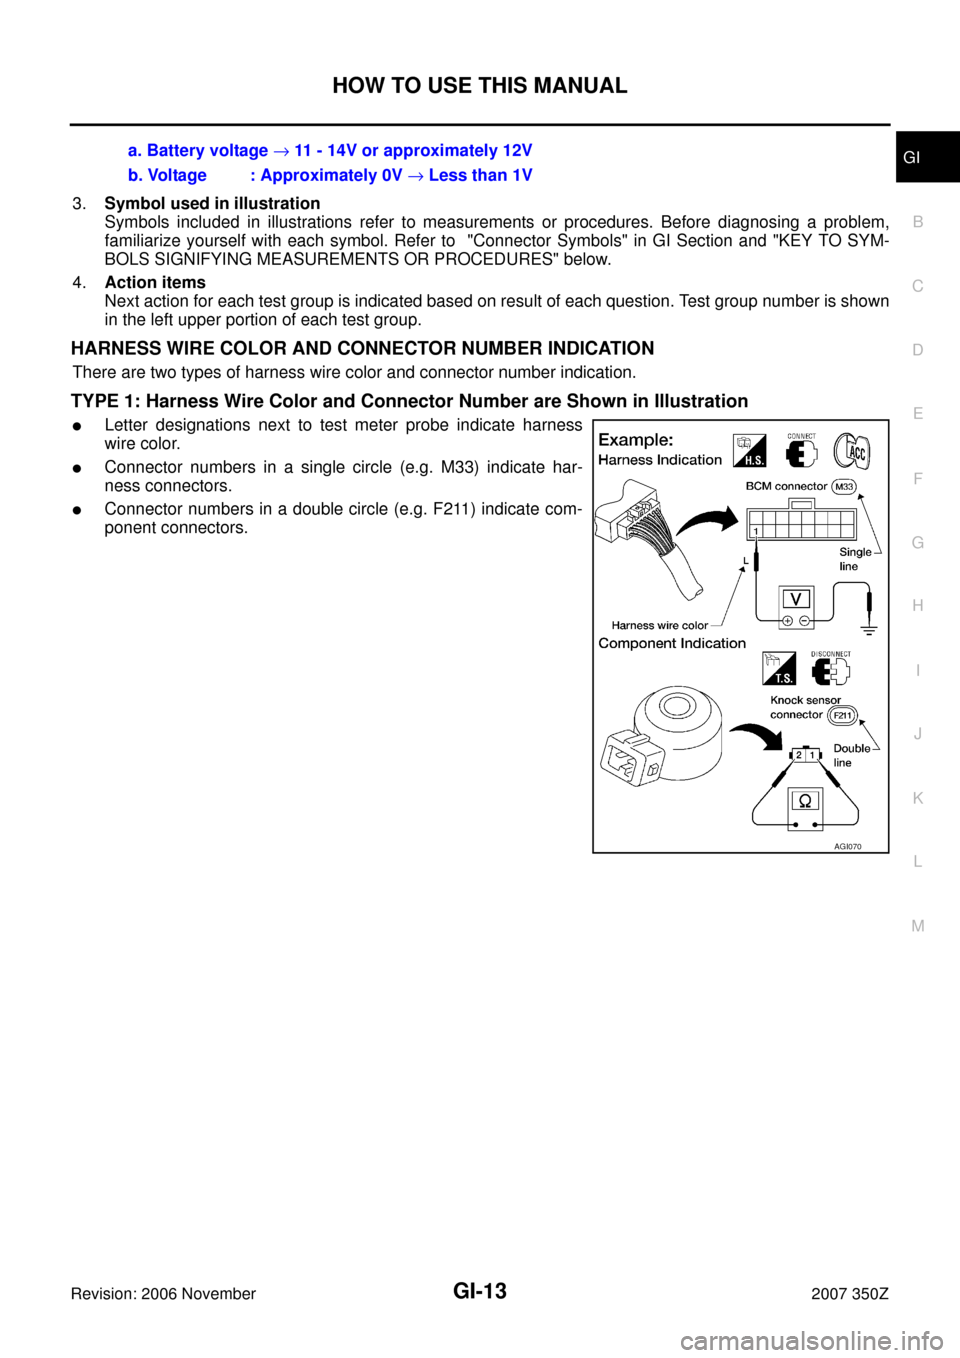 NISSAN 350Z 2007 Z33 General Information Workshop Manual HOW TO USE THIS MANUAL
GI-13
C
D
E
F
G
H
I
J
K
L
MB
GI
Revision: 2006 November2007 350Z
3.Symbol used in illustration
Symbols included in illustrations refer to measurements or procedures. Before diag